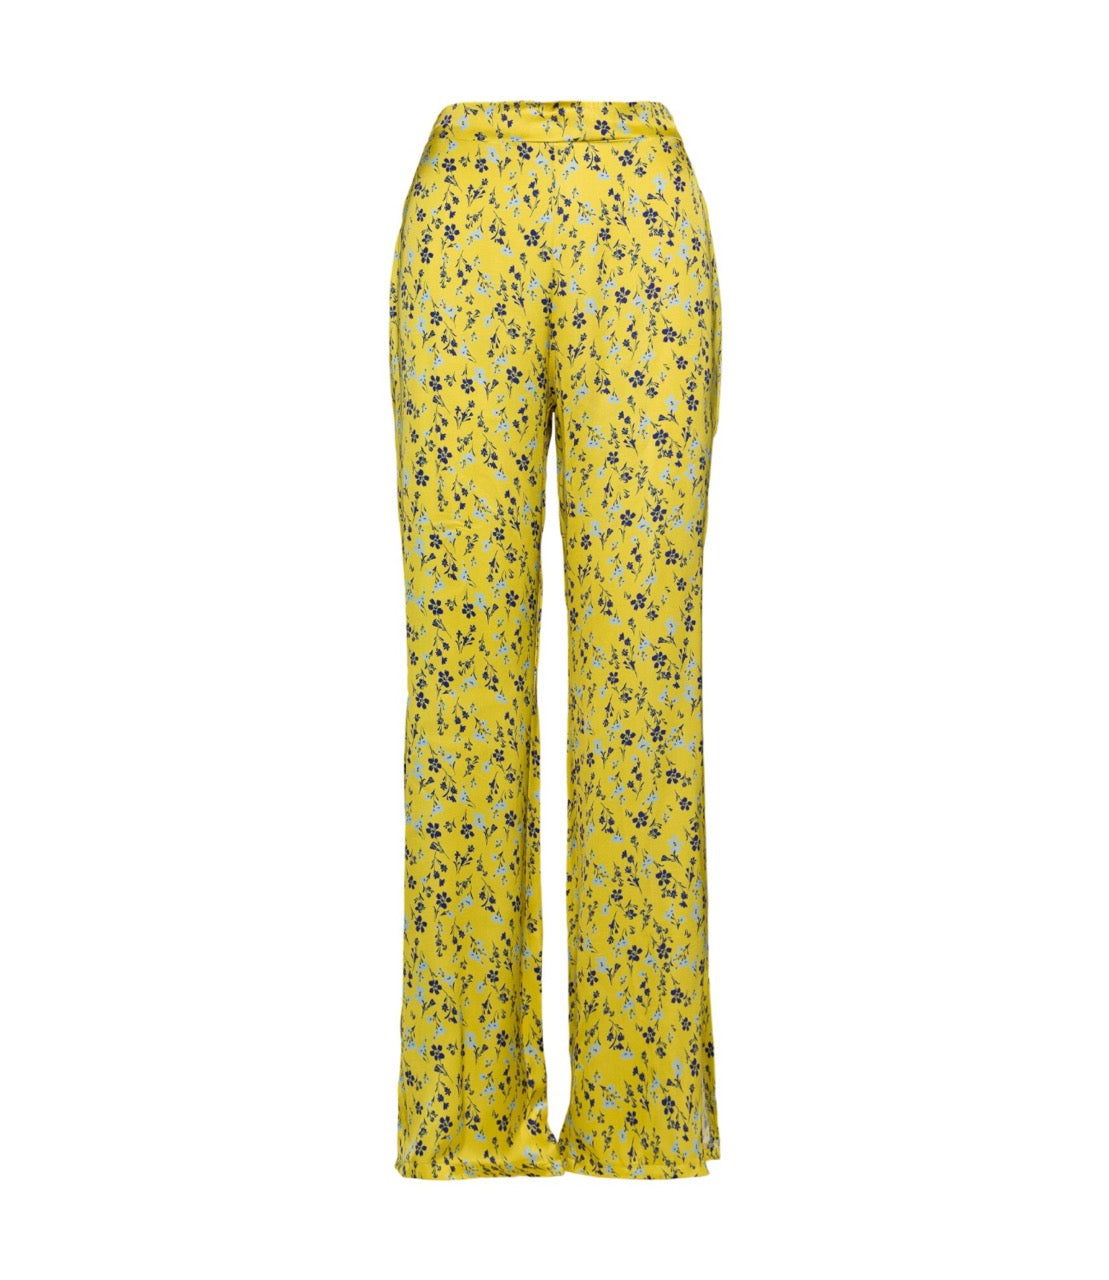 Saiph floral yellow print pants